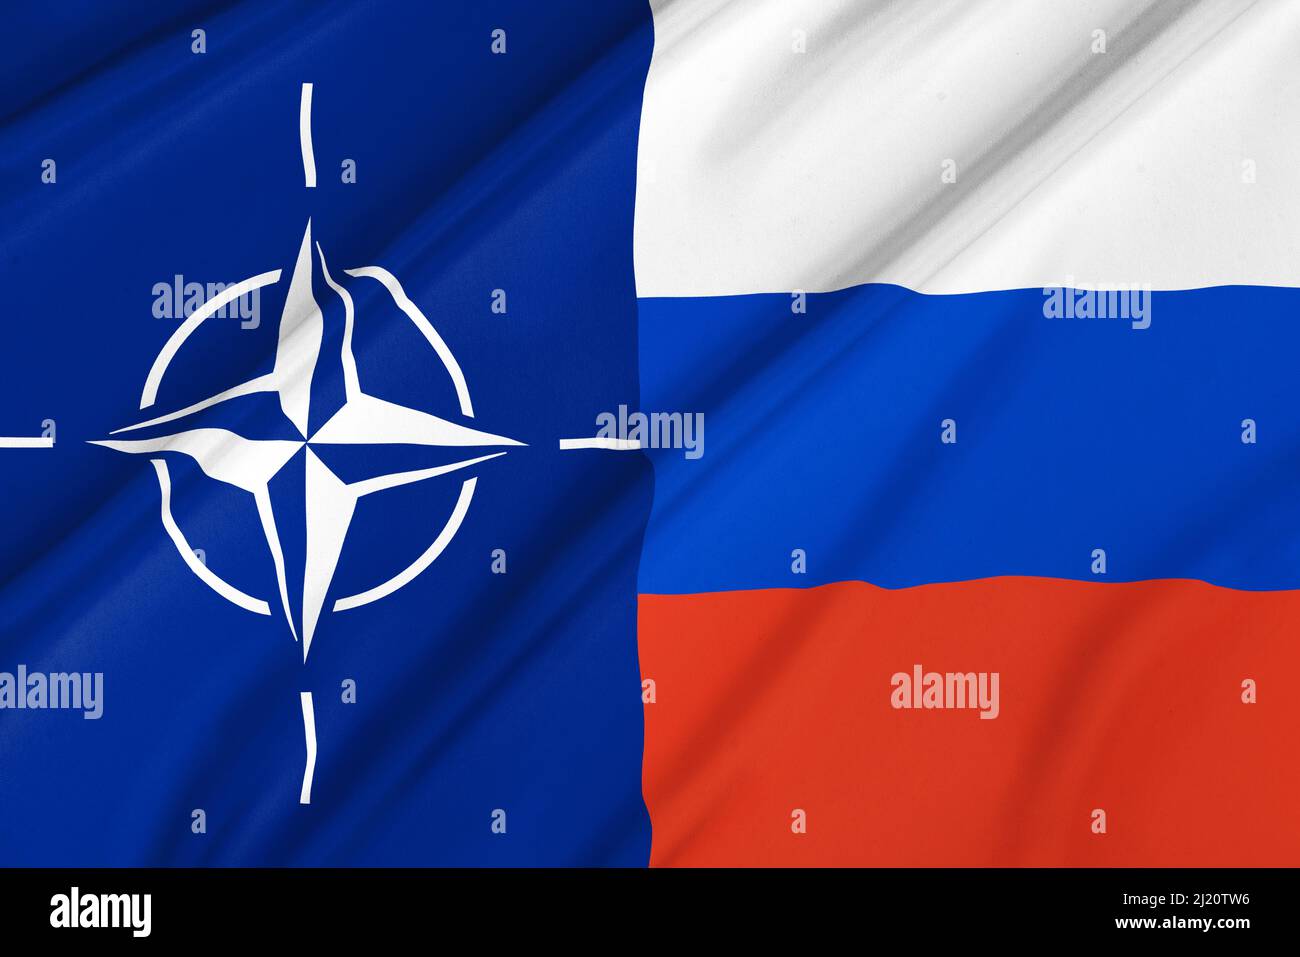 NATO and Russia flag concept Stock Photo